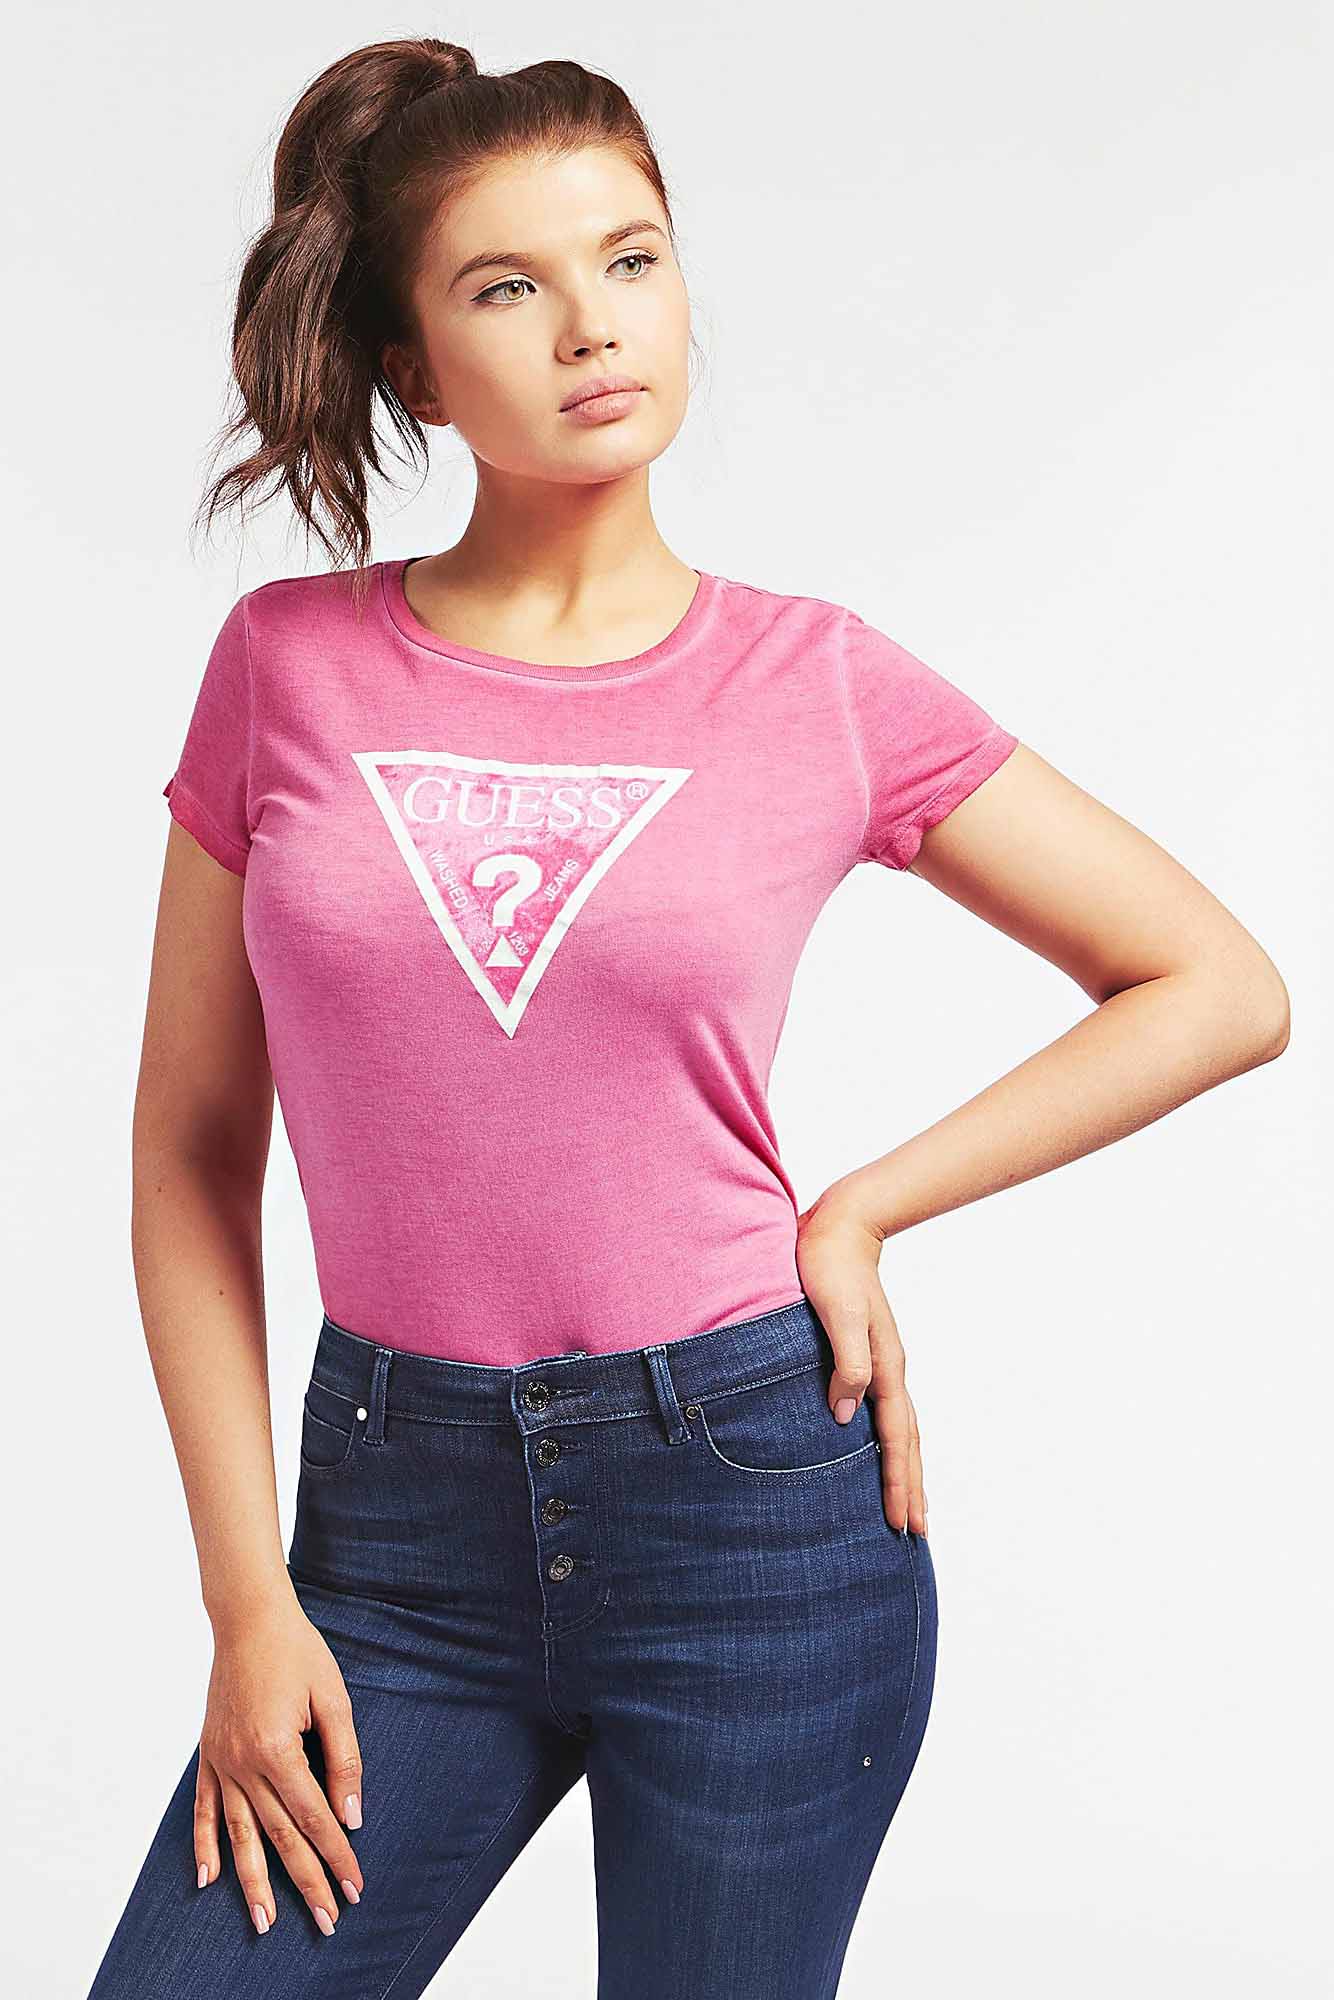 revolución Fruncir el ceño Lada Camiseta de la marca Guess Jeans de color Rosa para mujer